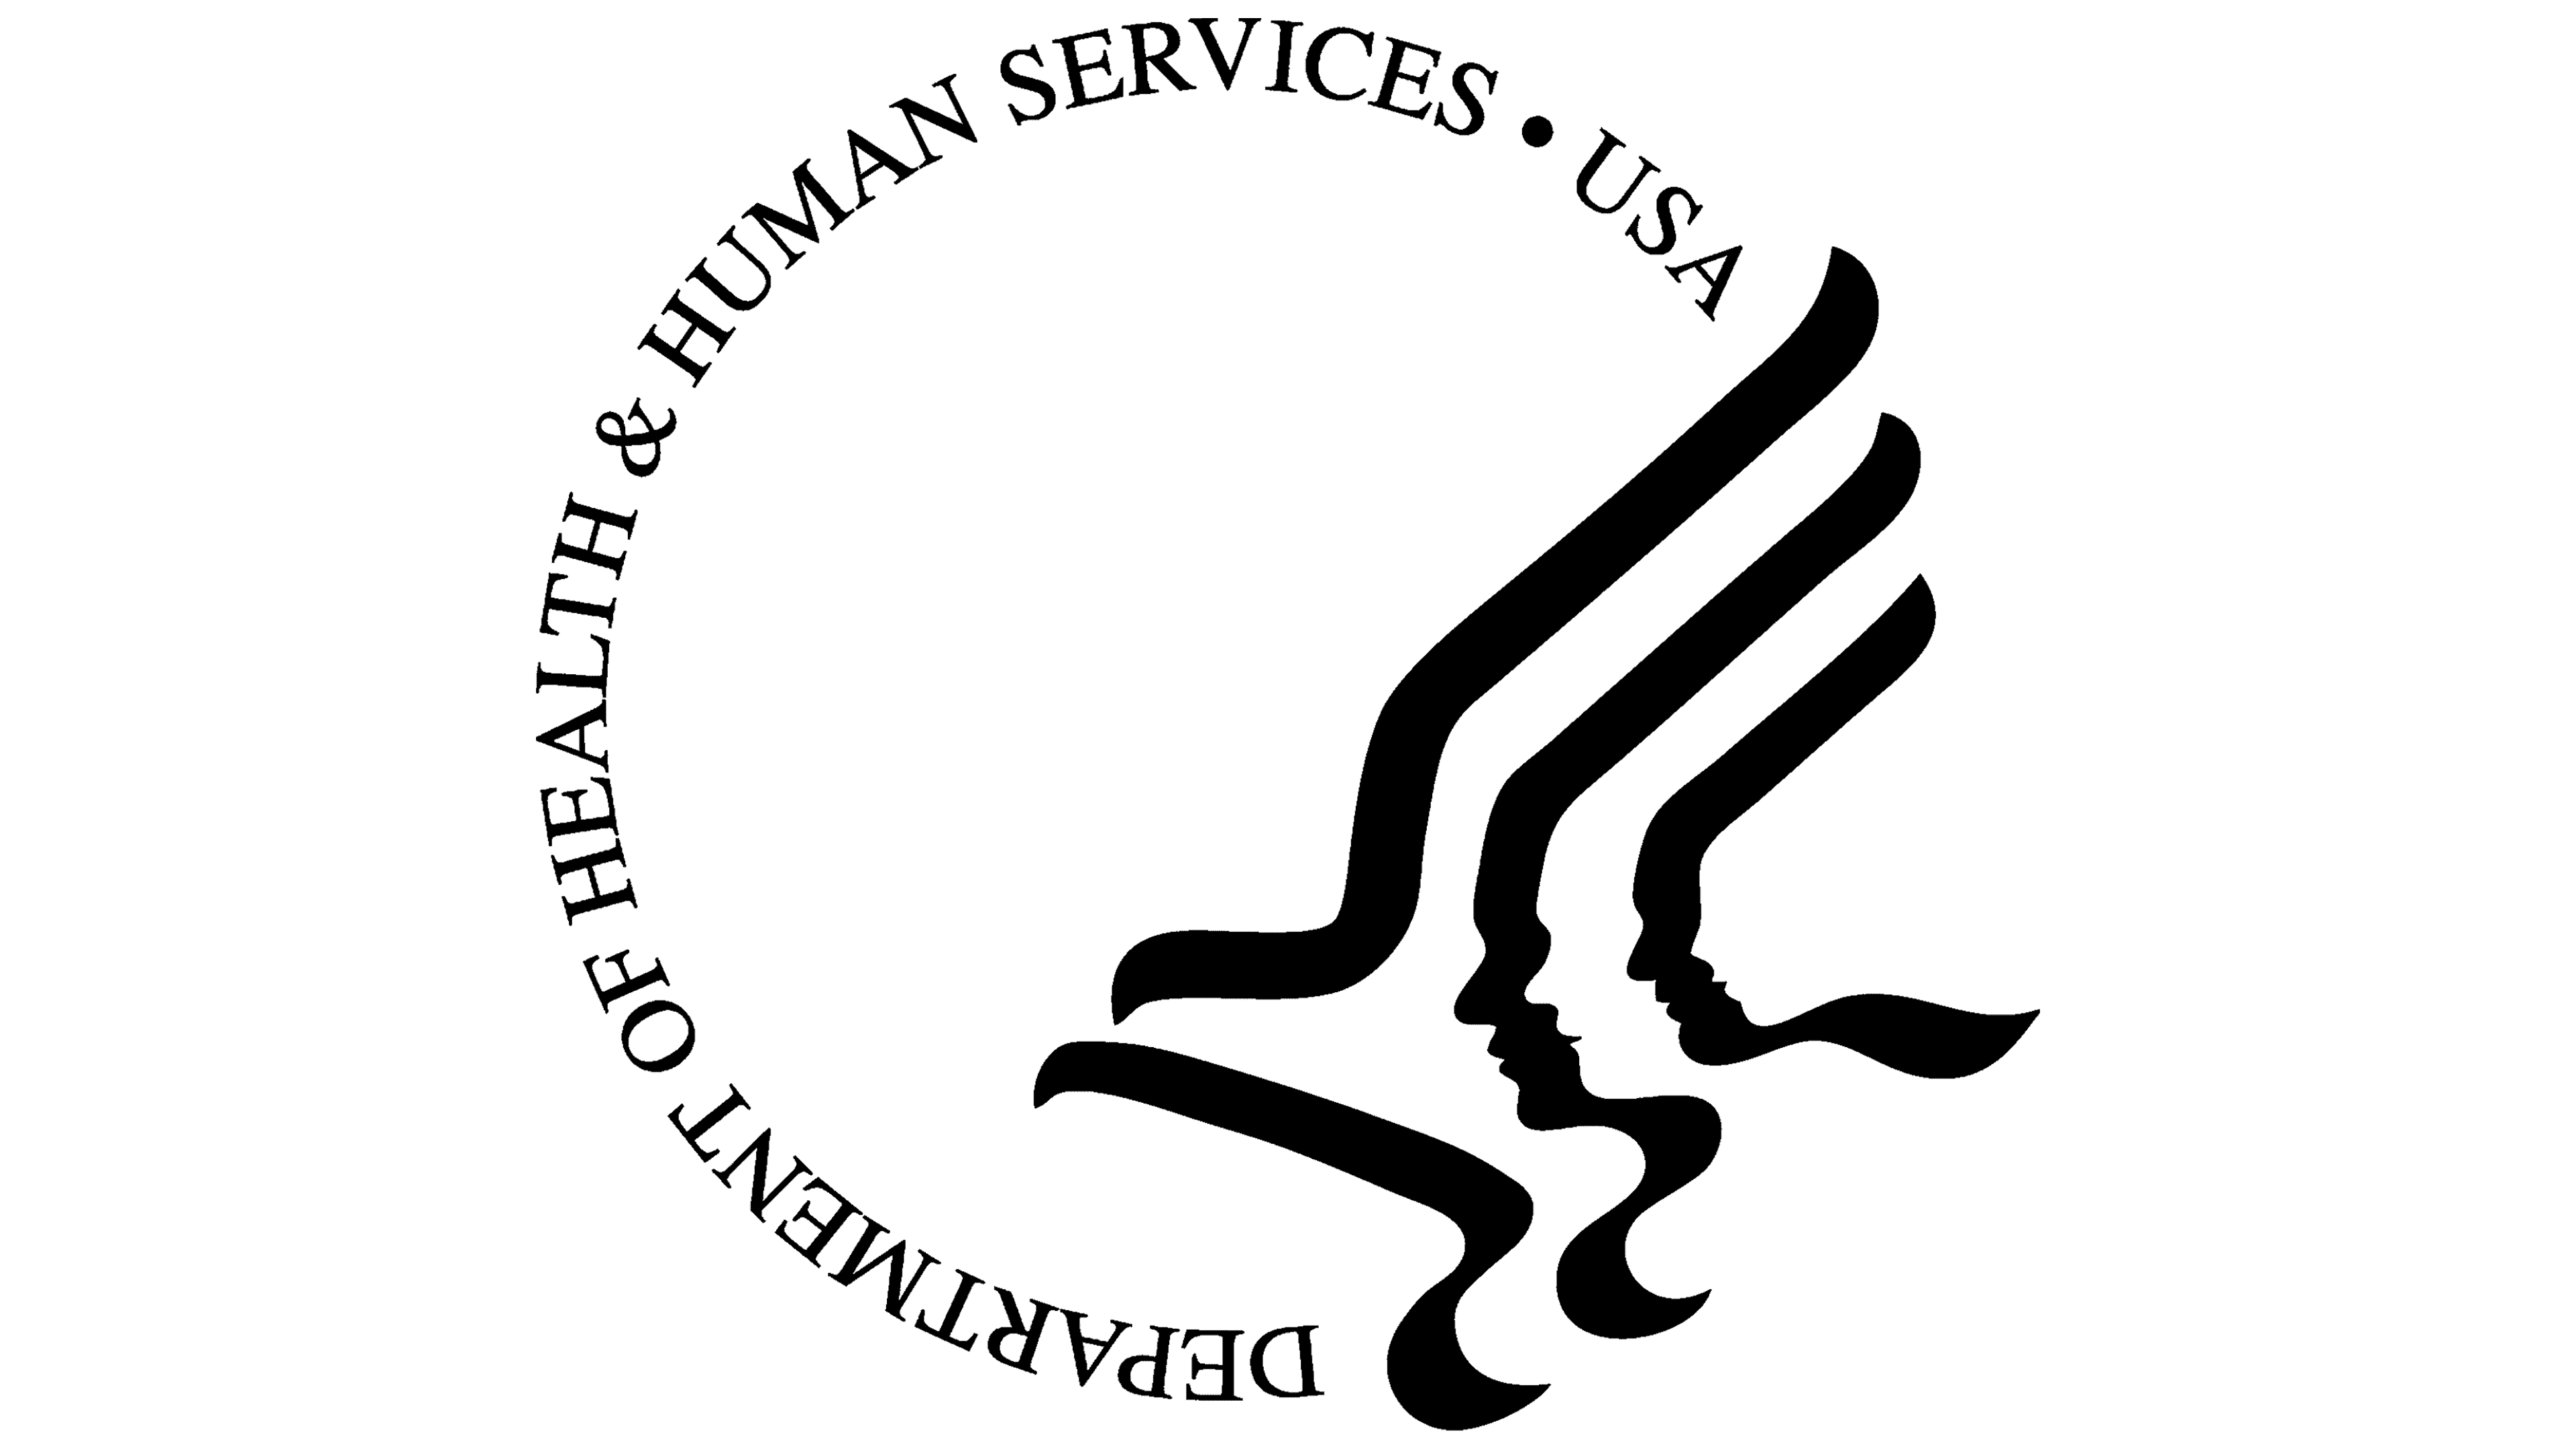 Center for medicare and medicaid services logo emblem nuance development framework